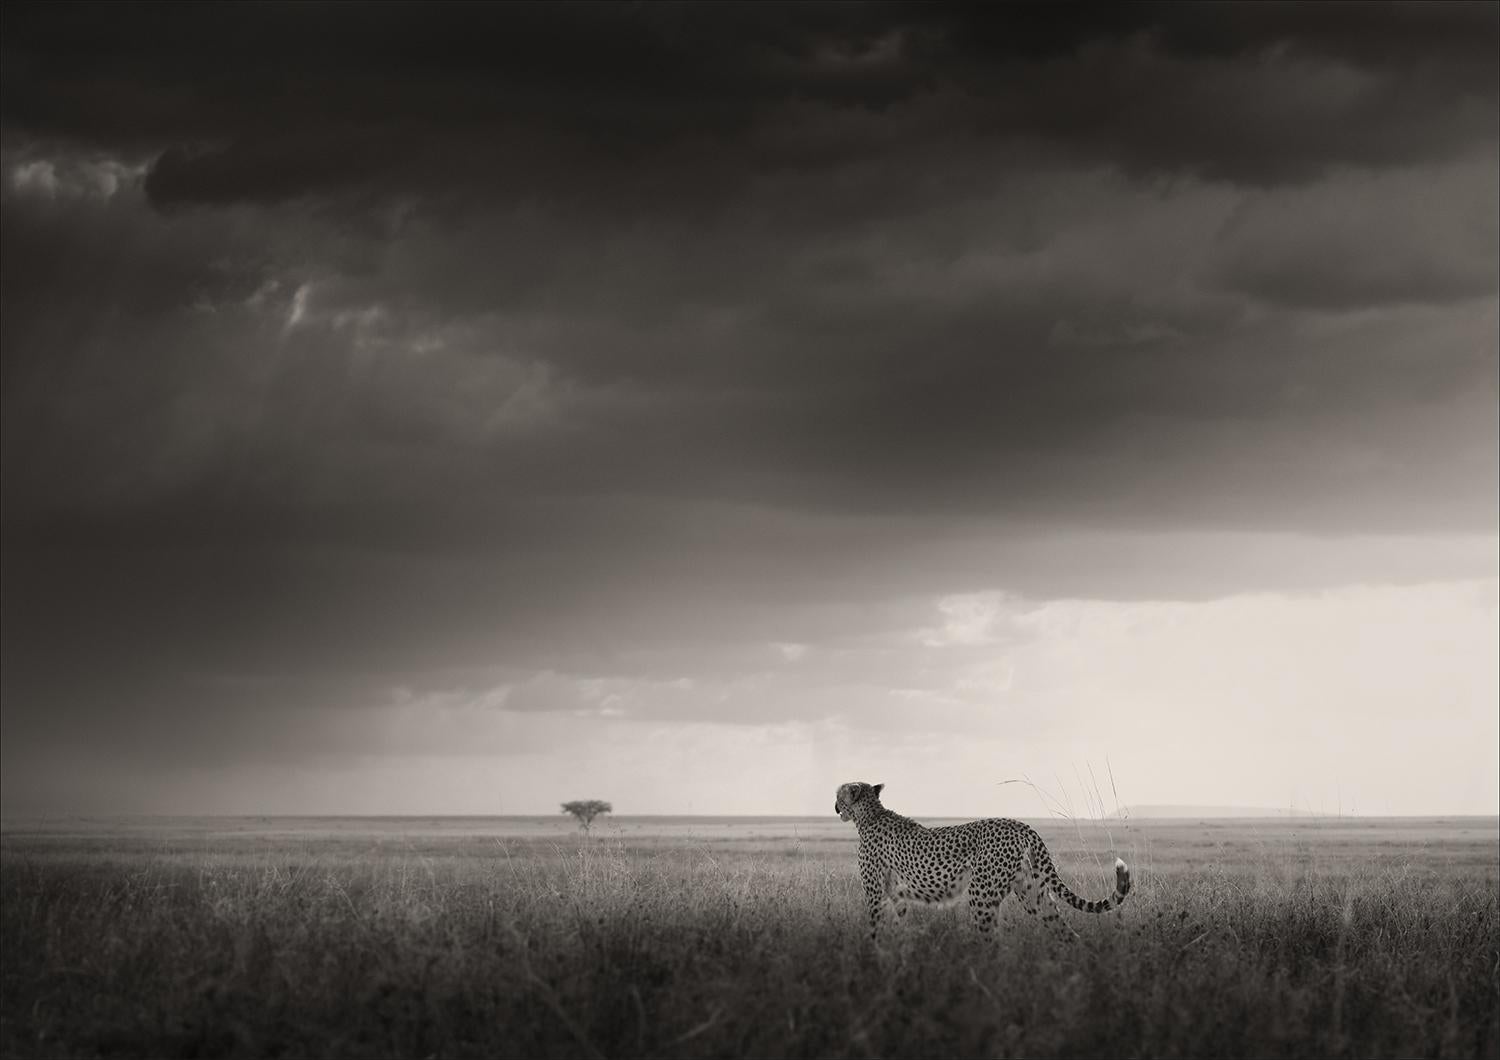 Landscape Photograph Joachim Schmeisser - Long chemin depuis Eden, noir et blanc, animal, Afrique, photographie, guépard